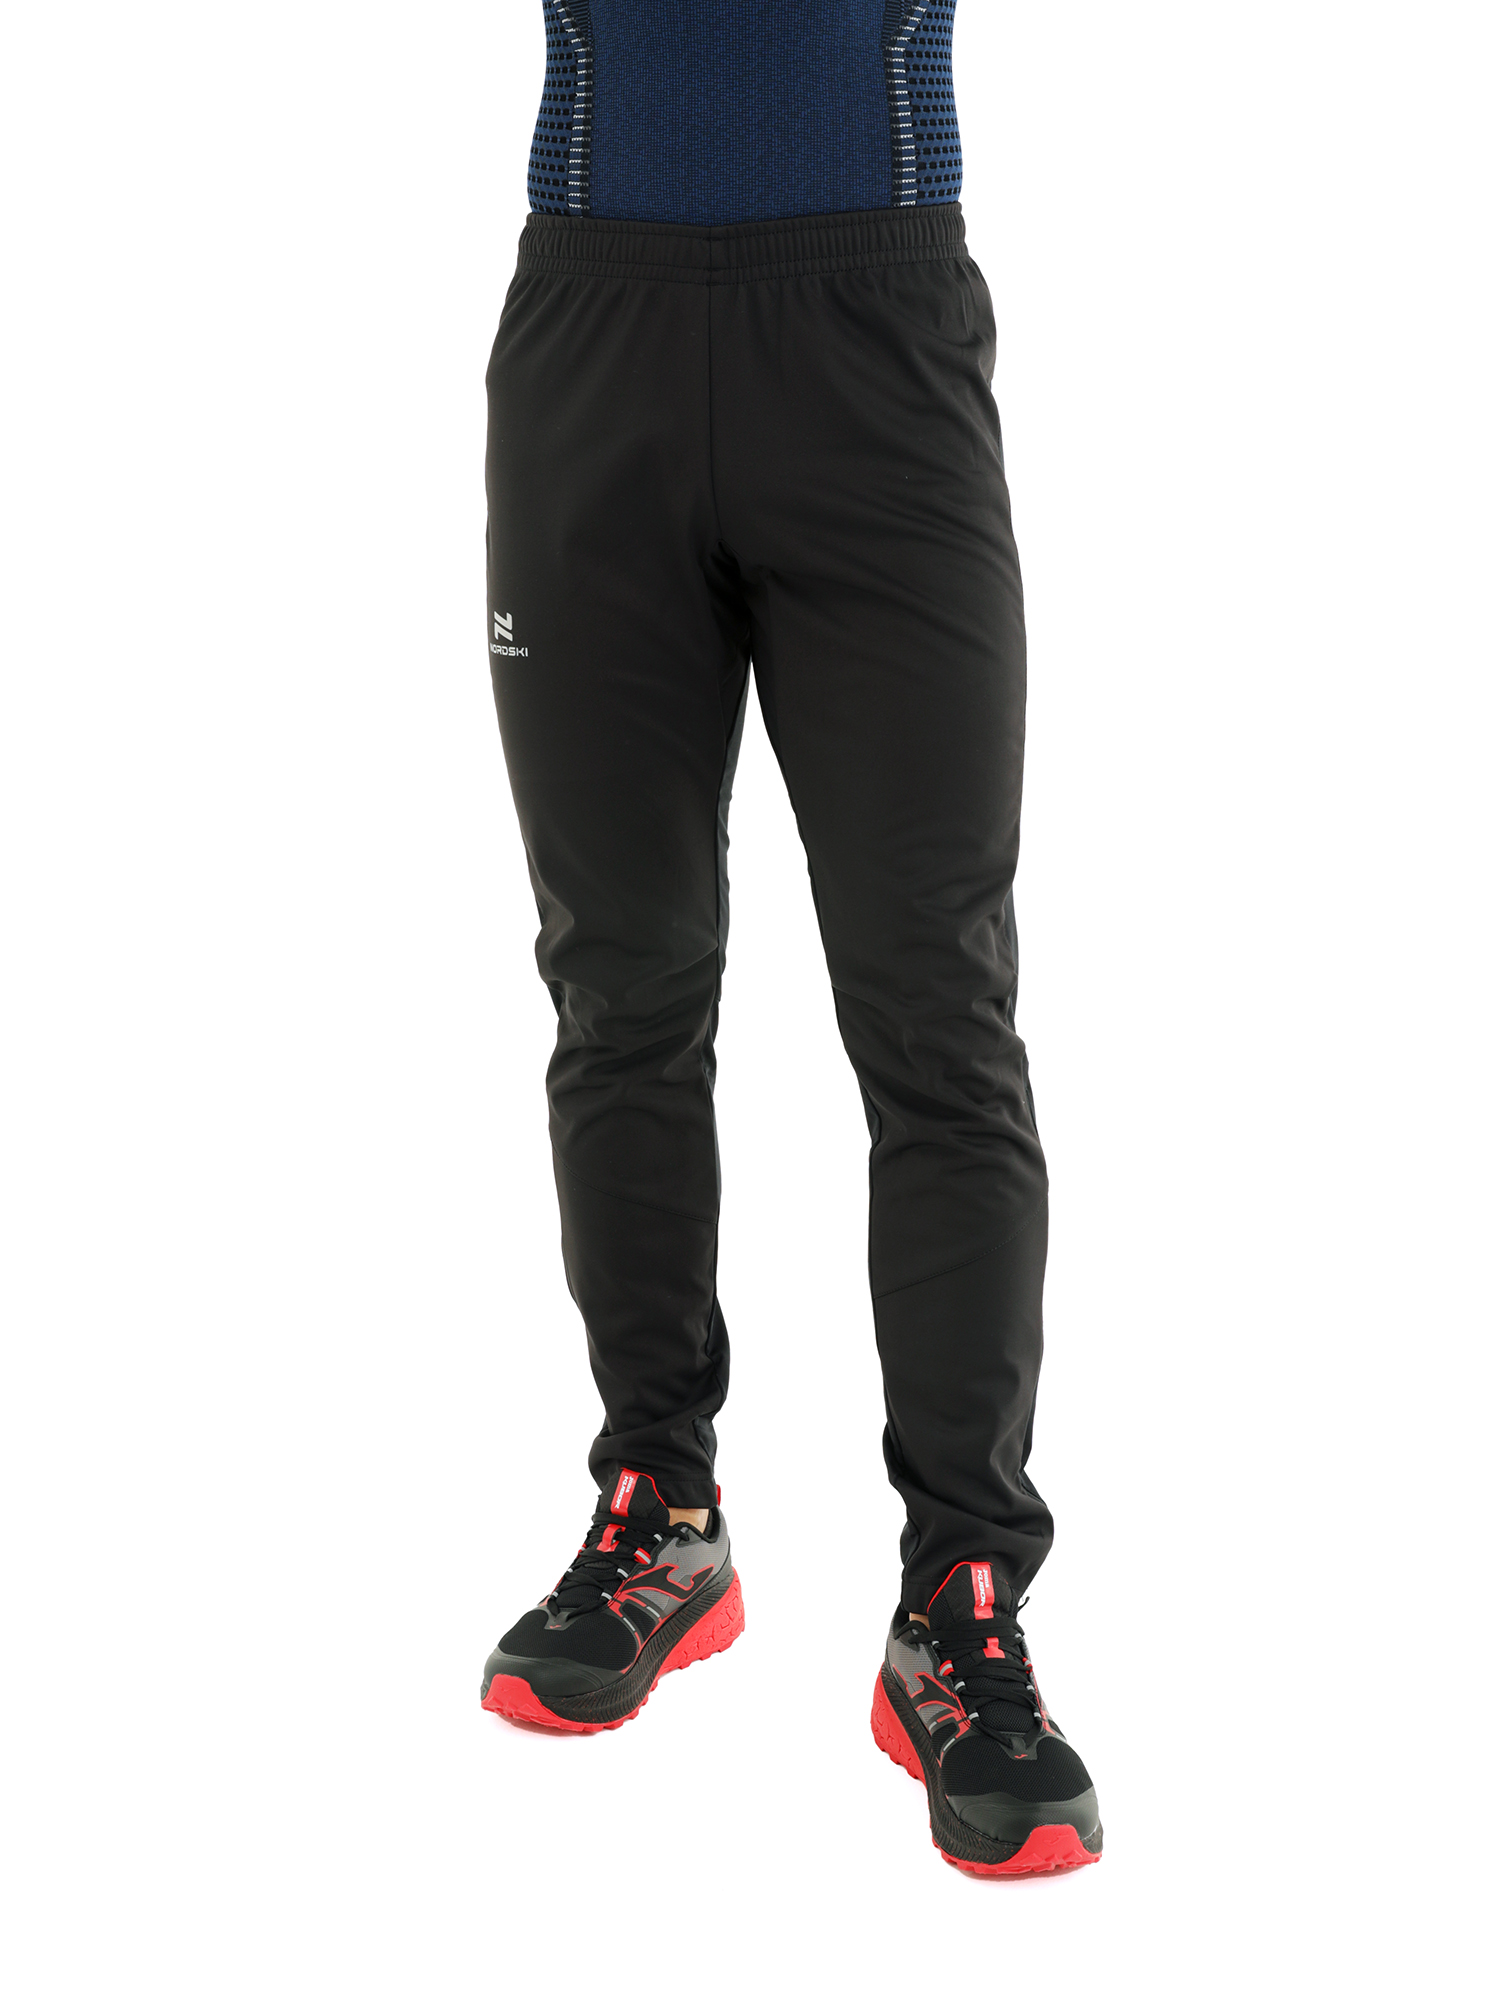 Спортивные брюки мужские NordSki Nsm520100 черные M